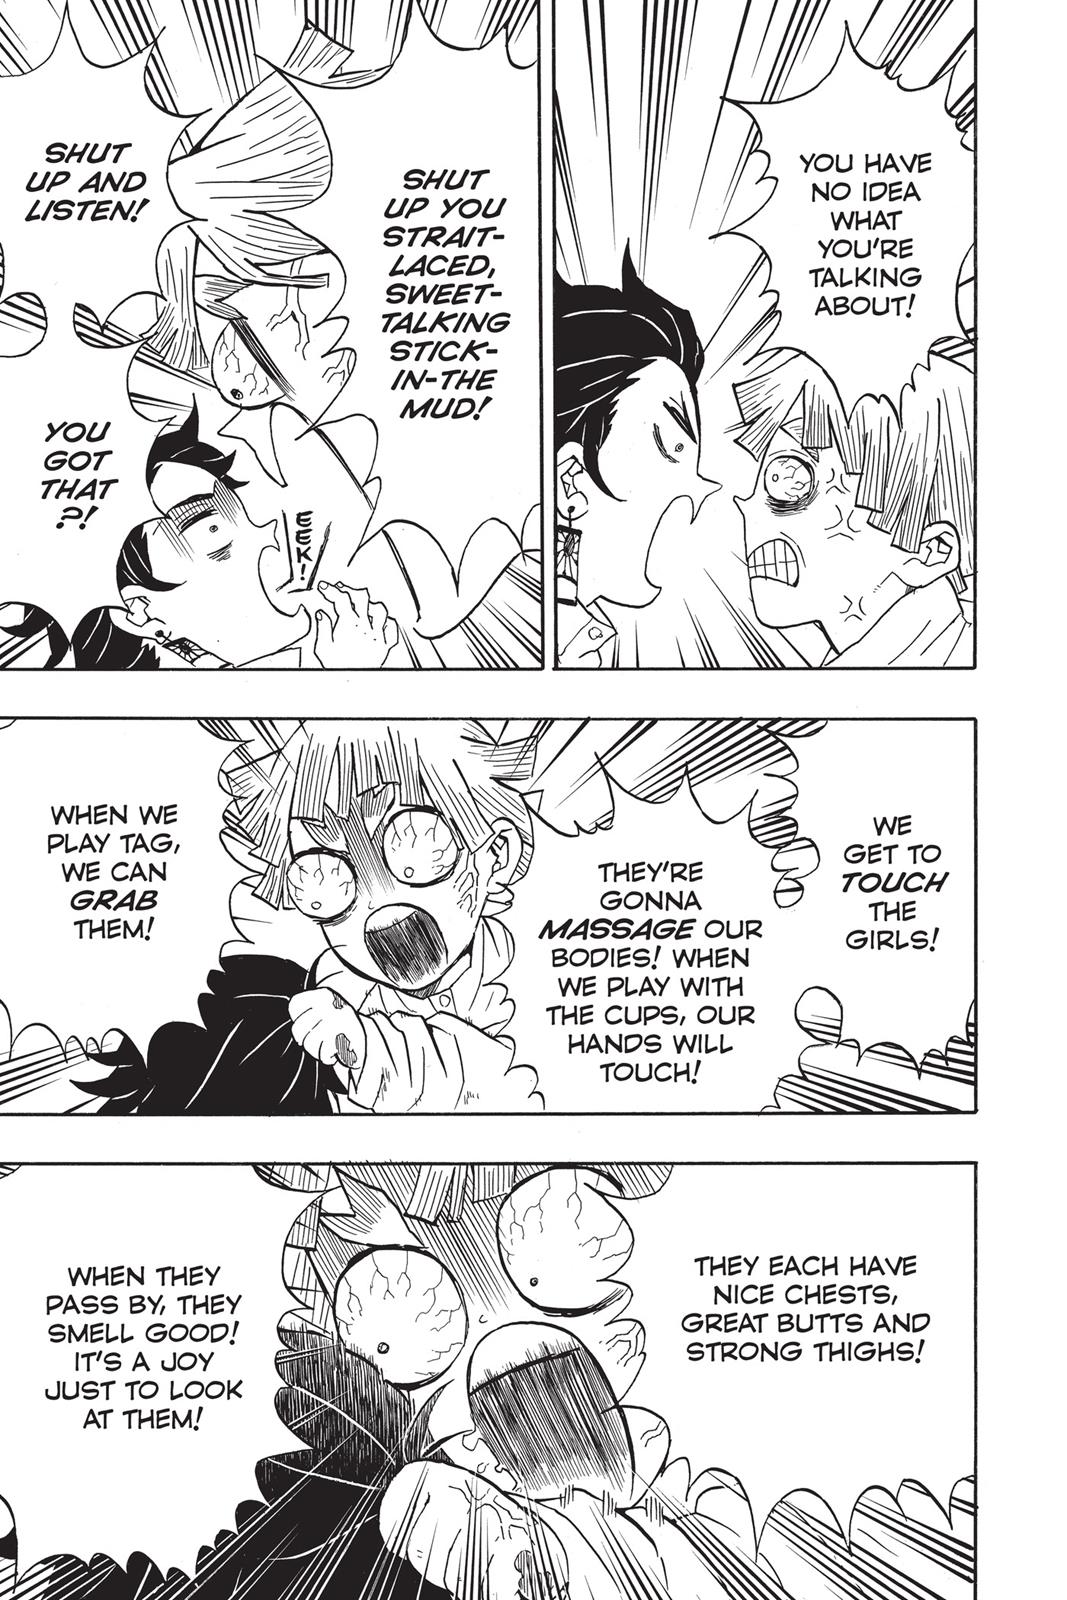 Demon Slayer Manga Manga Chapter - 49 - image 9